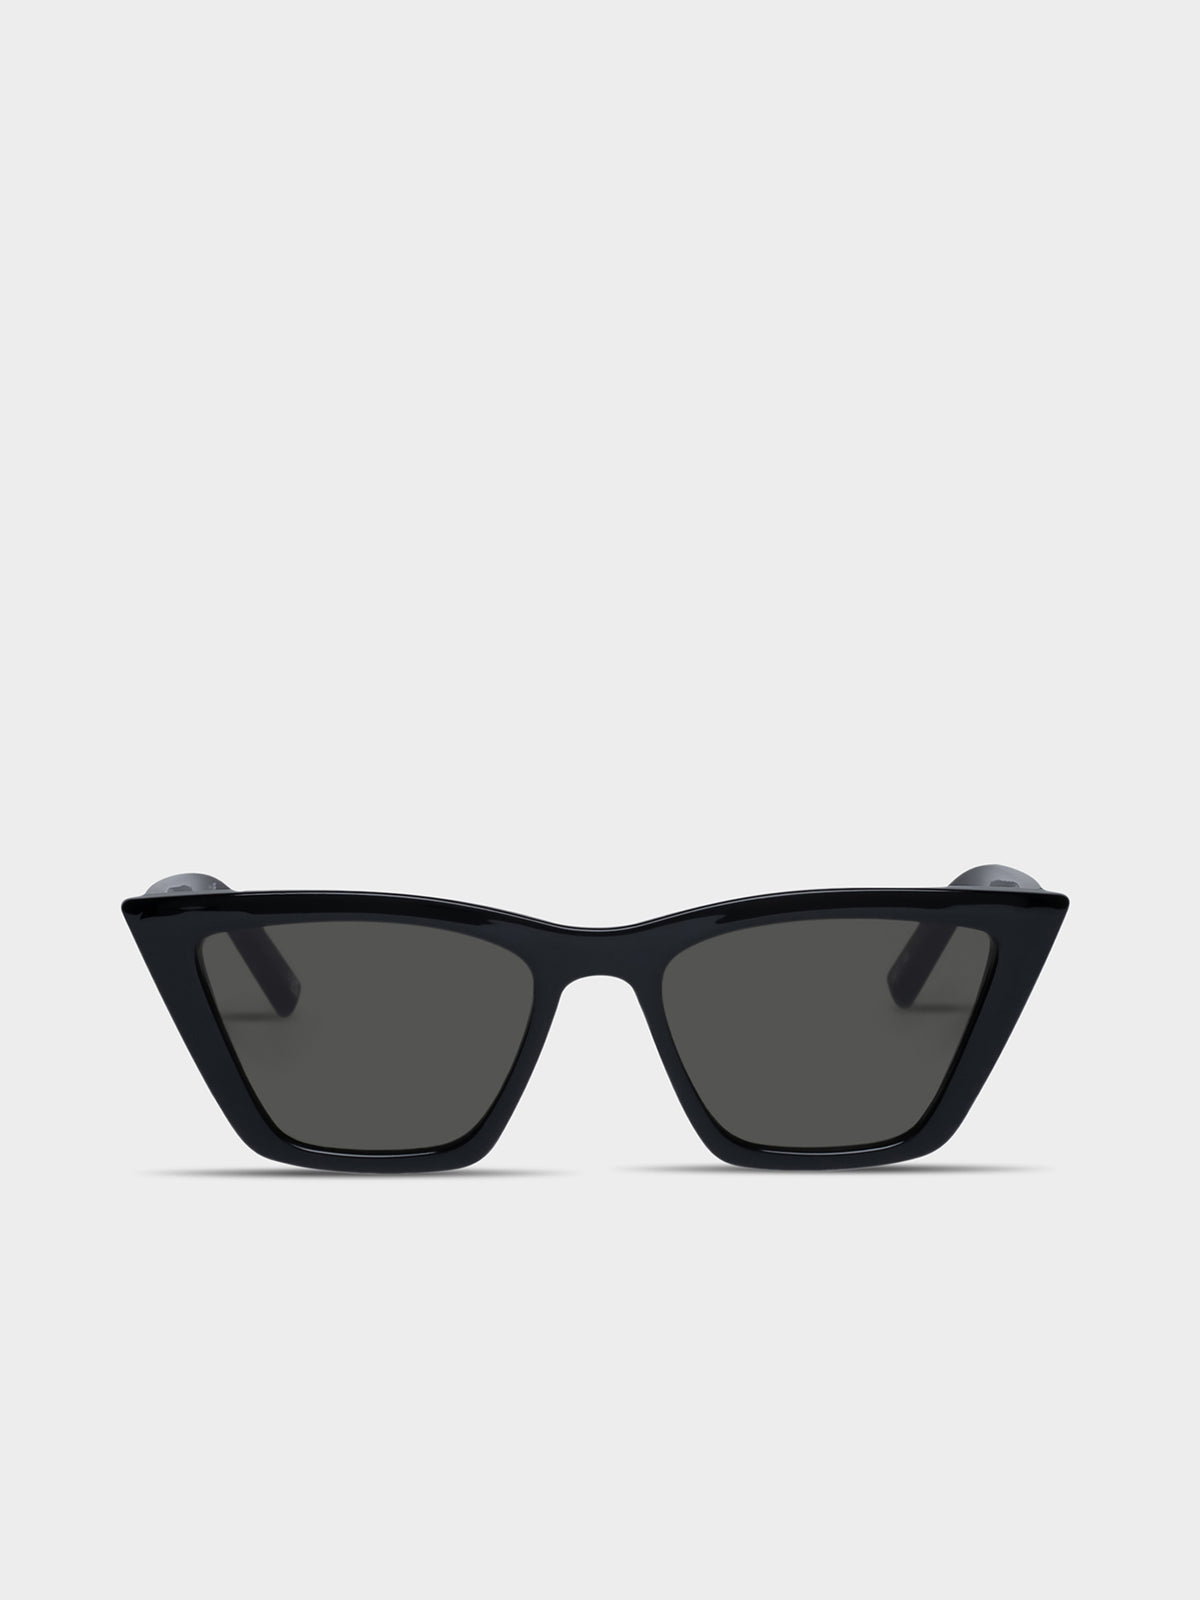 Velodrome Sunglasses in Black Khaki Mono